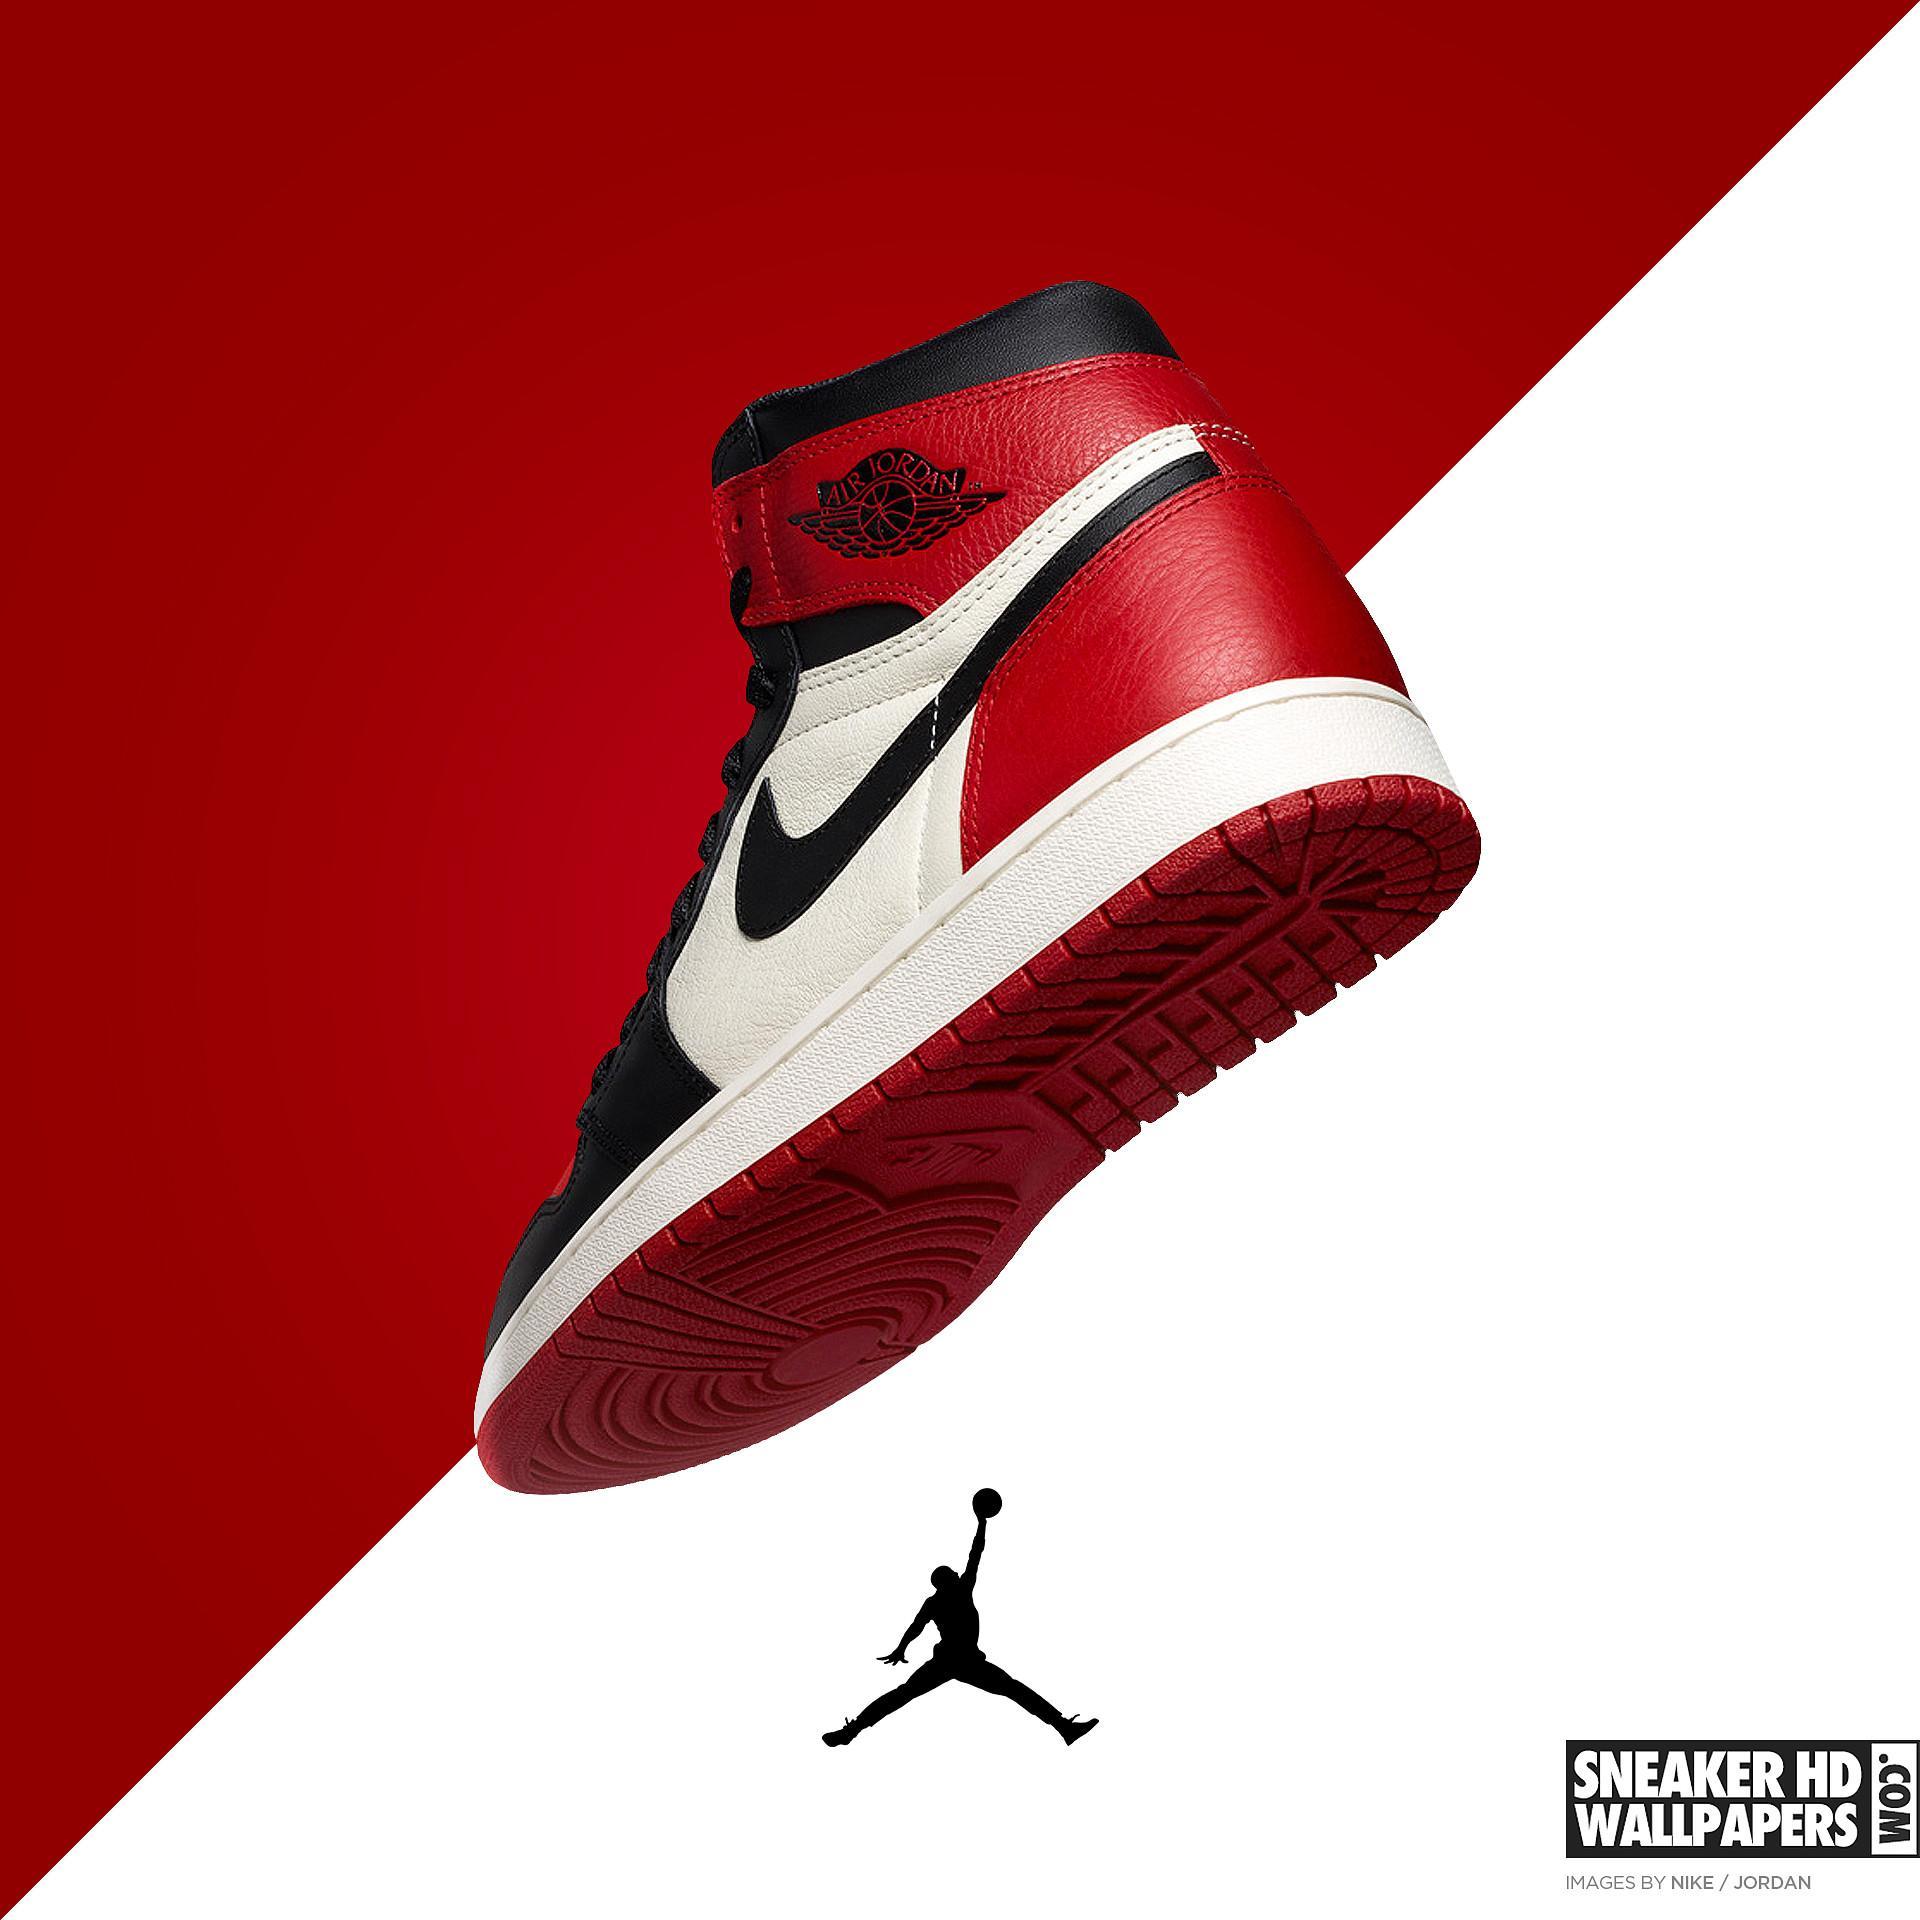 Nike Air Jordan 1 Wallpapers - Top Free 